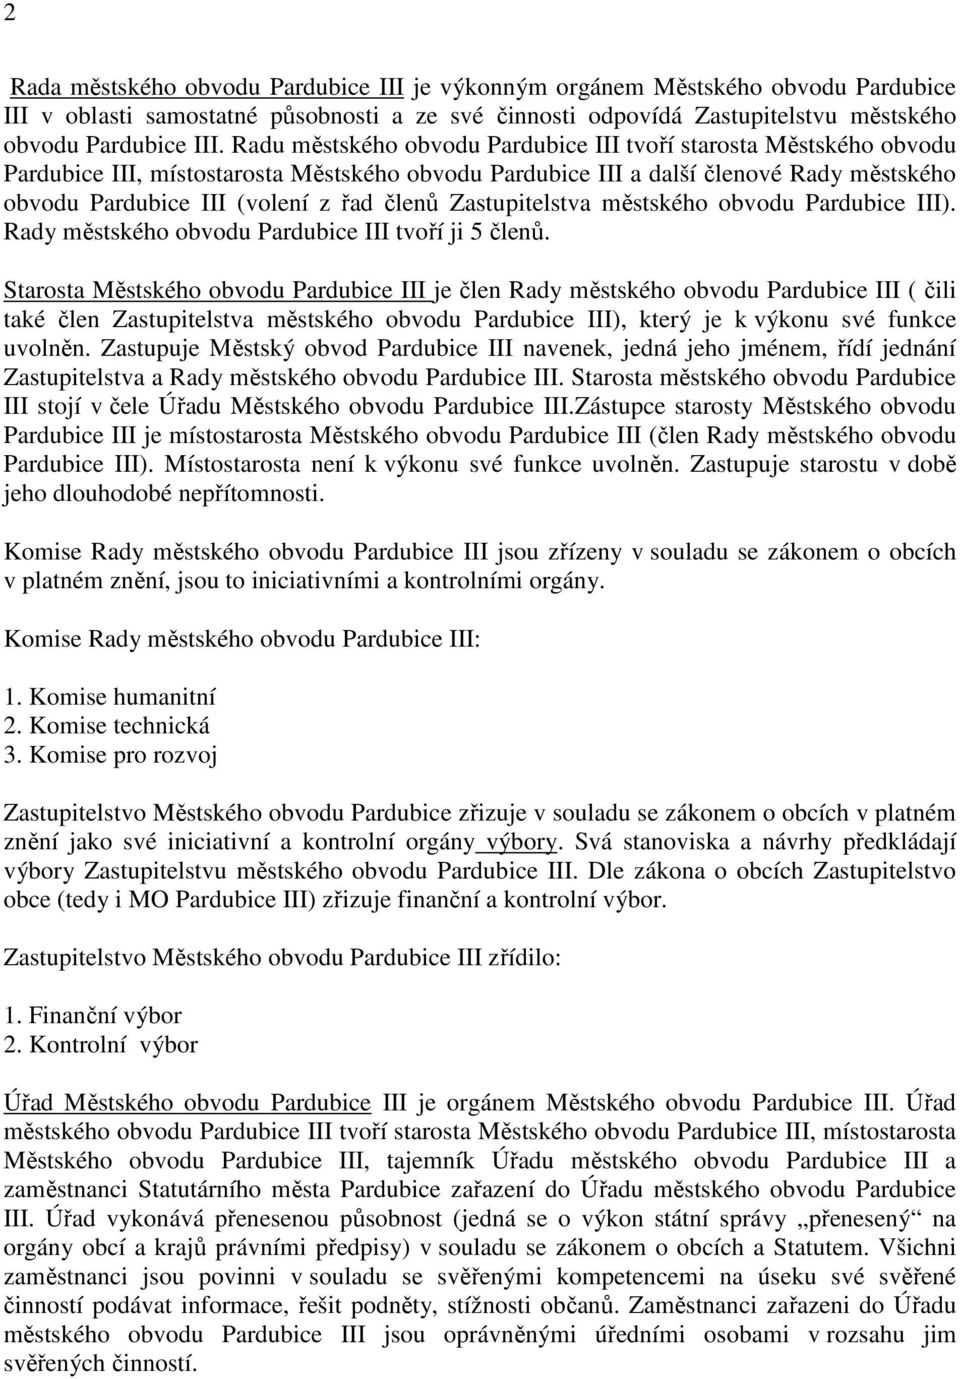 Zastupitelstva městského obvodu Pardubice III). Rady městského obvodu Pardubice III tvoří ji 5 členů.